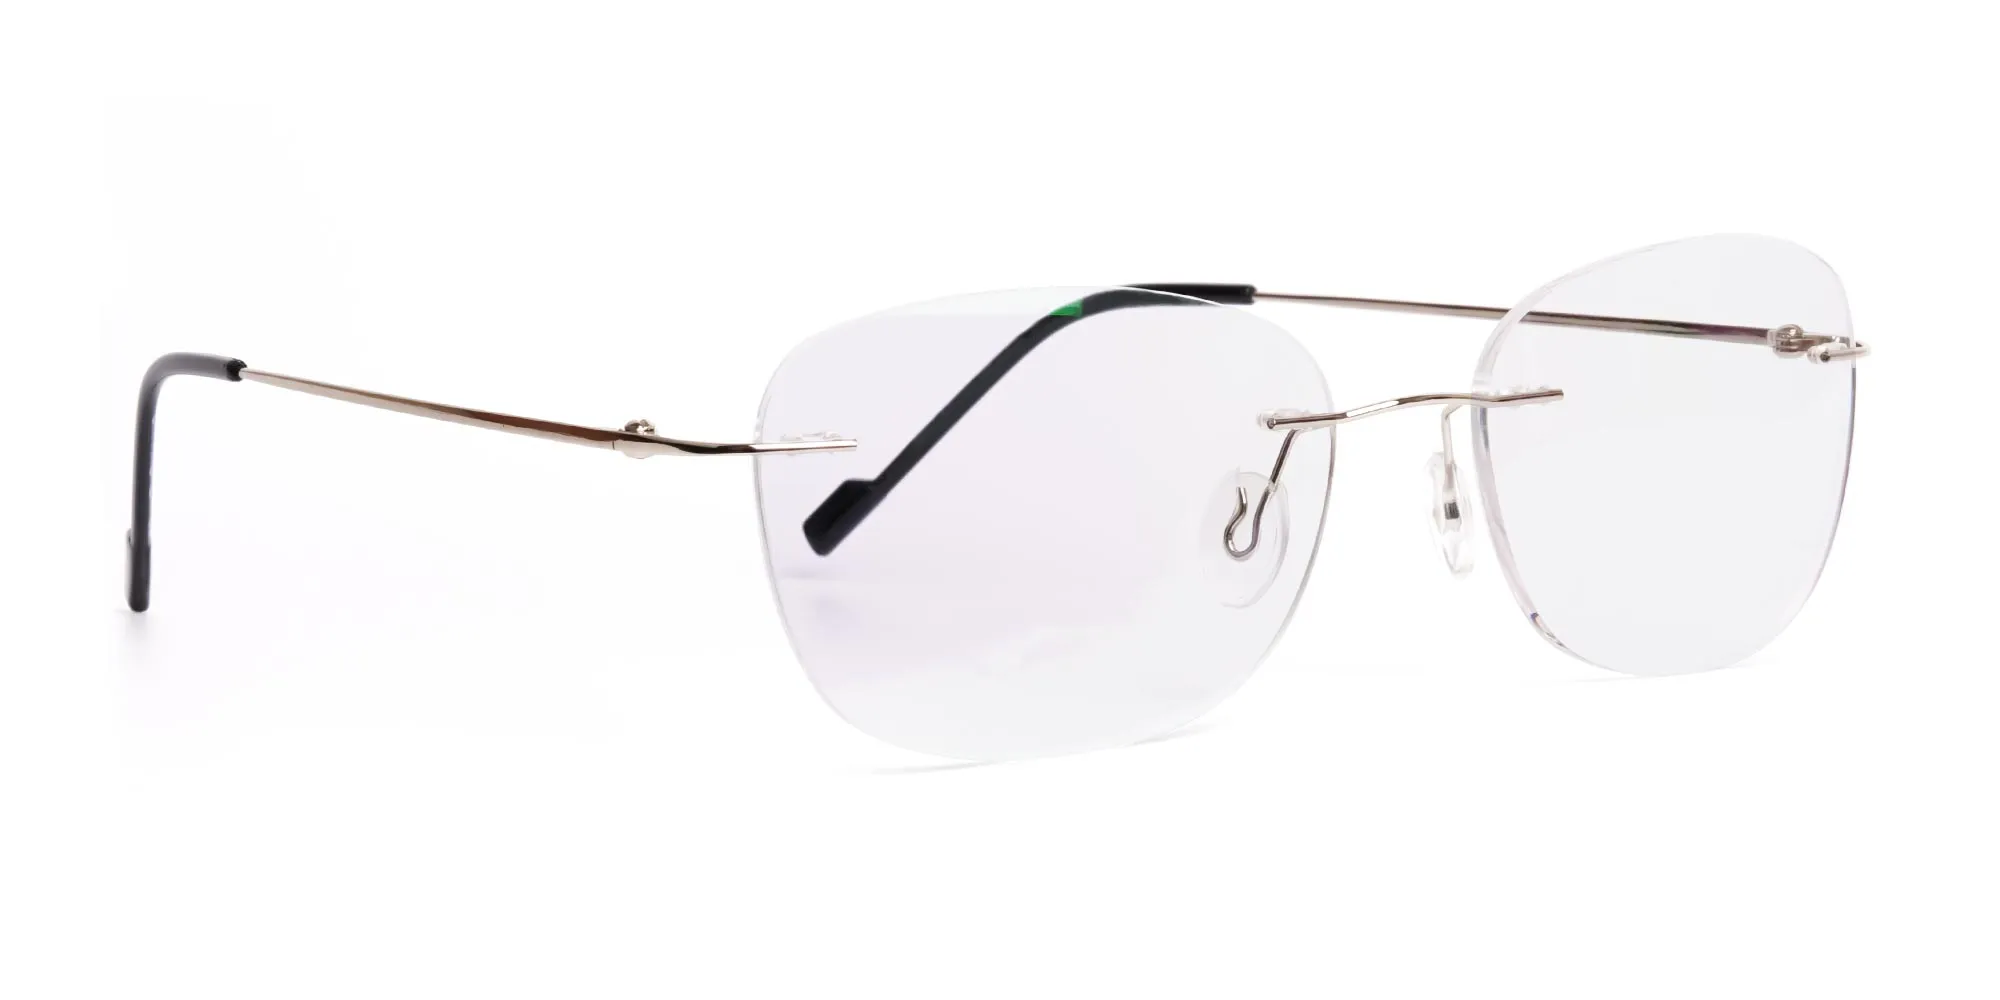 silver squarer rimless glasses frames-2